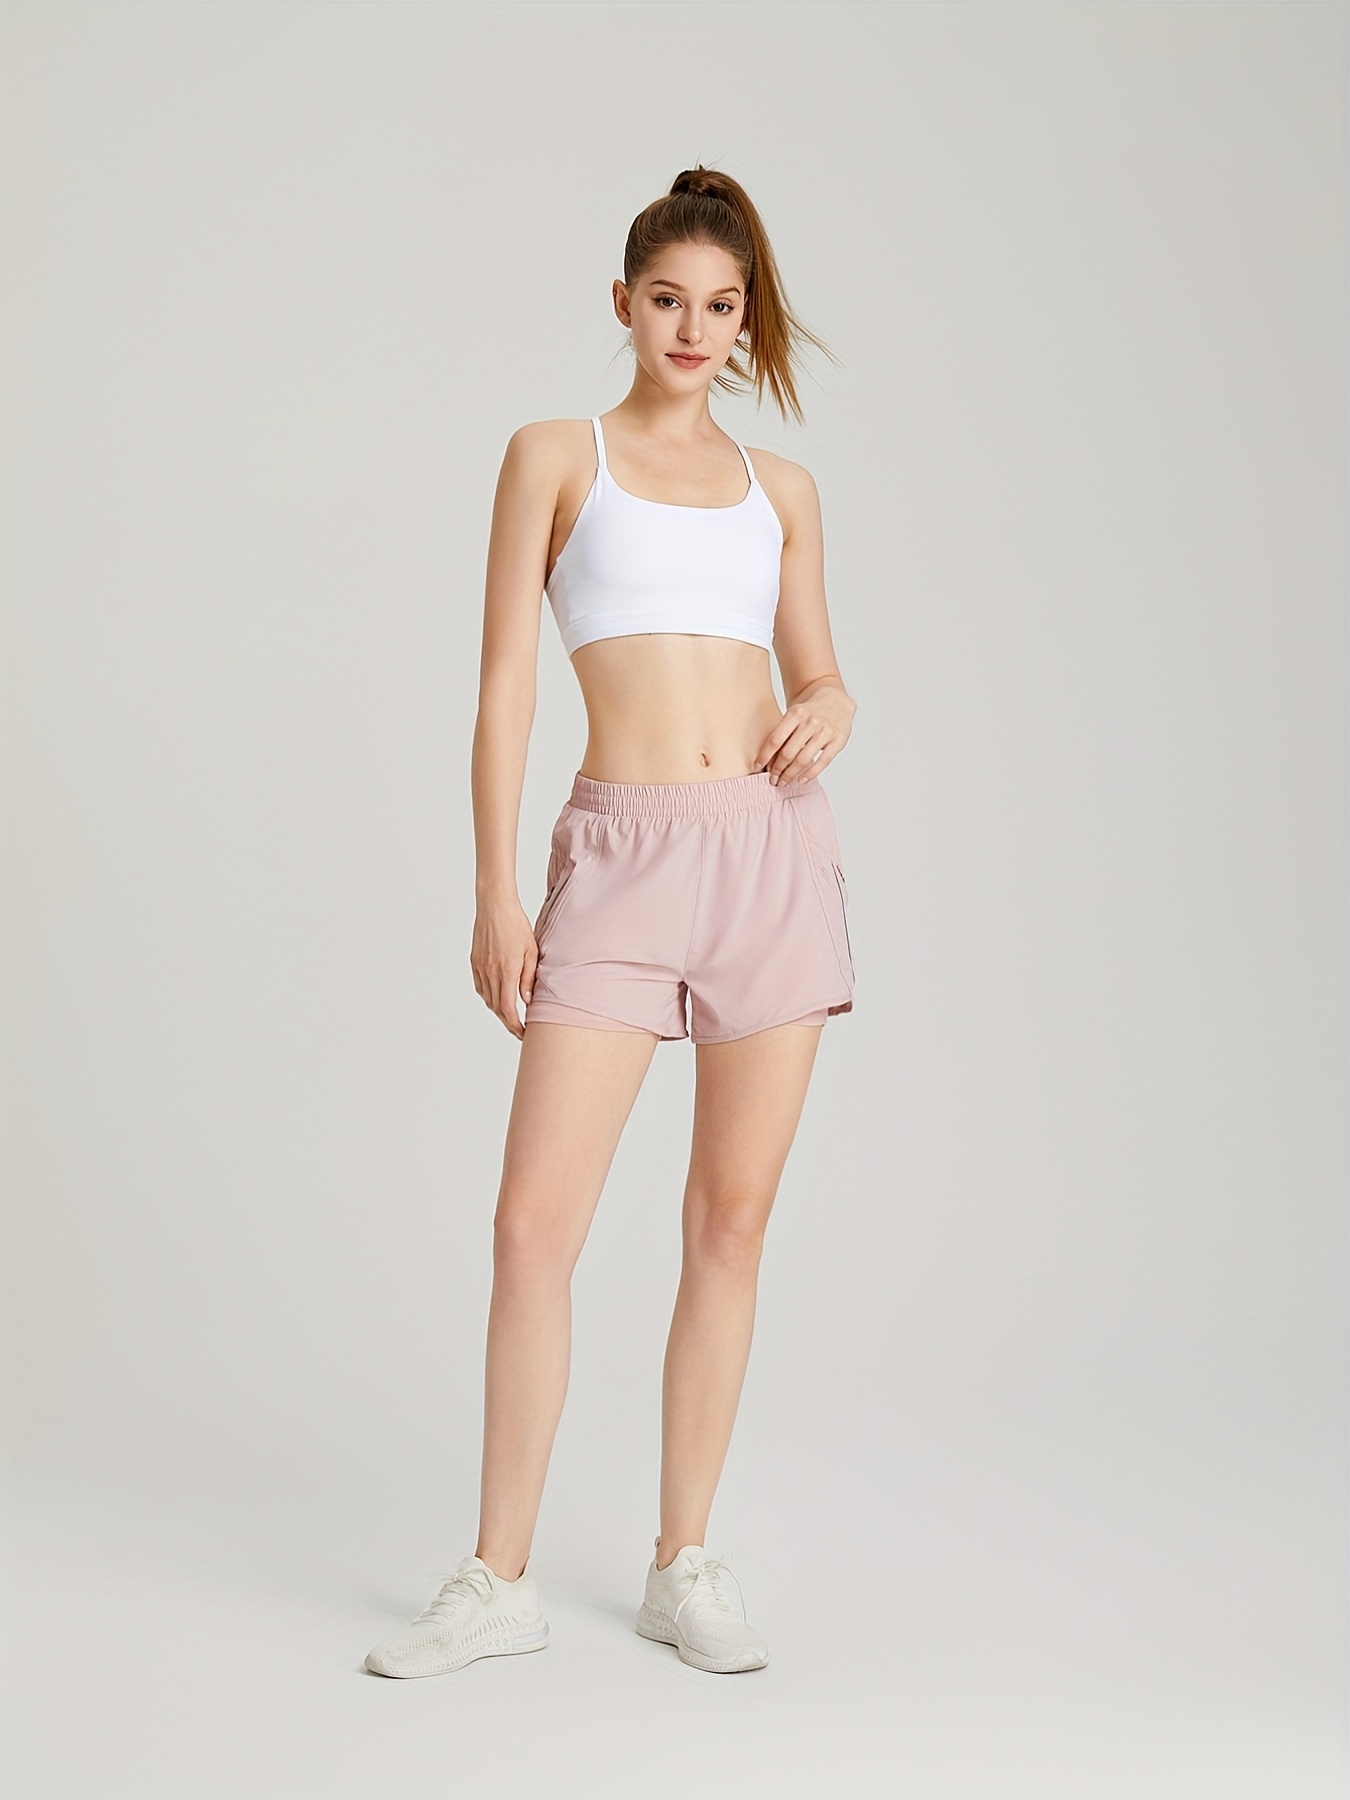 Pantalones deportivos para mujer, para correr, ejercicio, deporte,  gimnasio, caminar, color rosa, talla M, Rosado